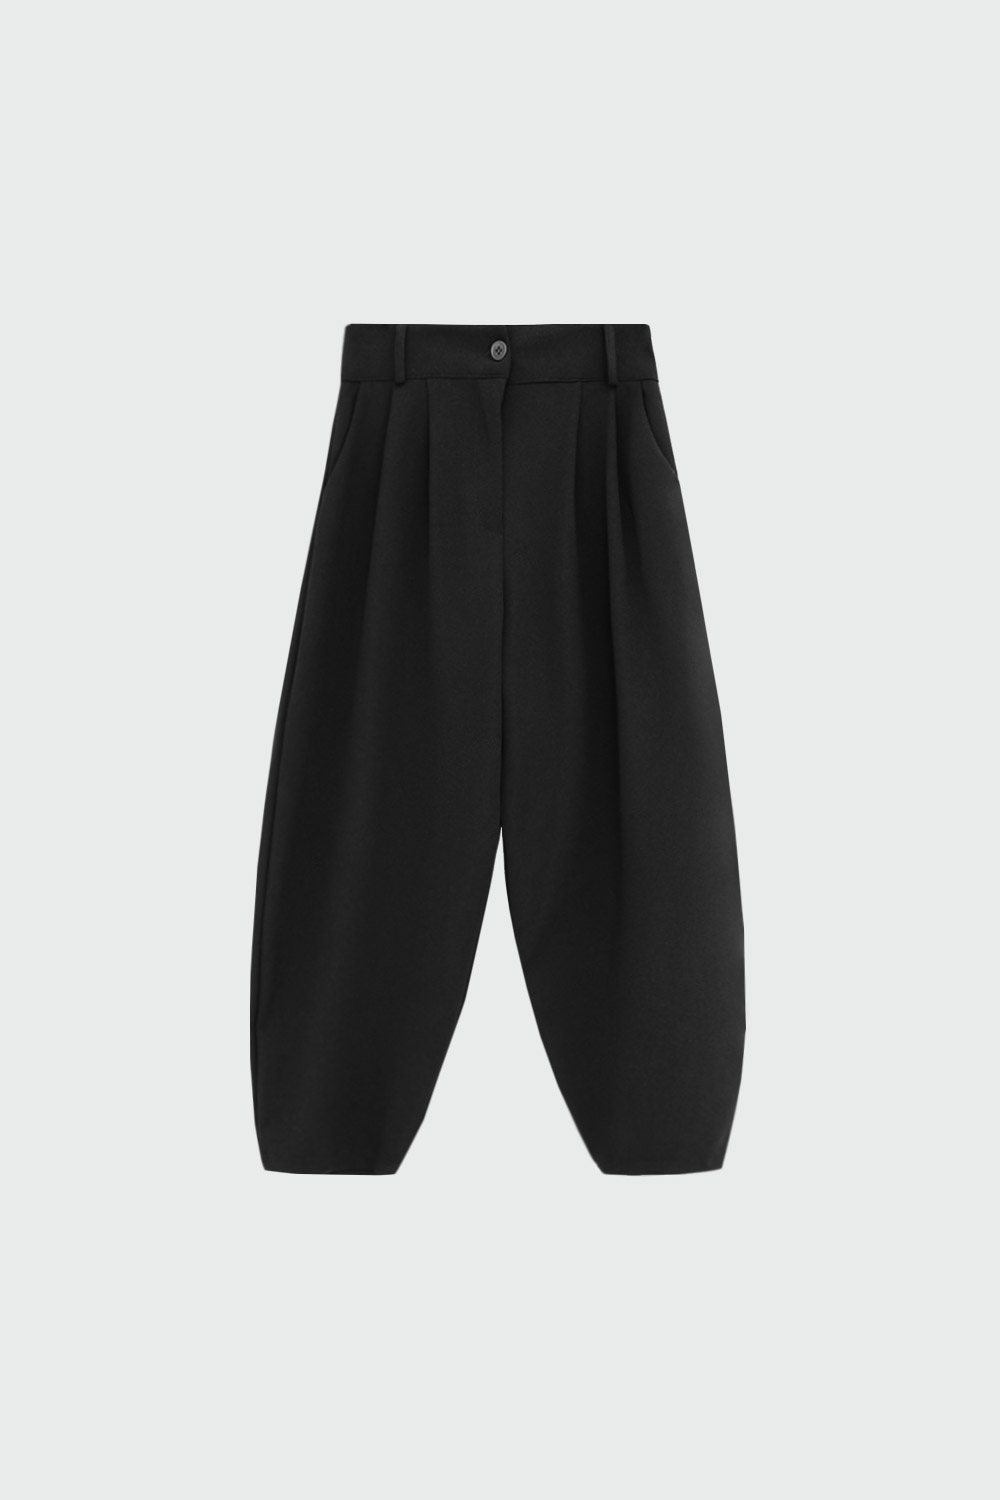 Slouchy Yüksek Bel Siyah Kadın Denim / Pantolon